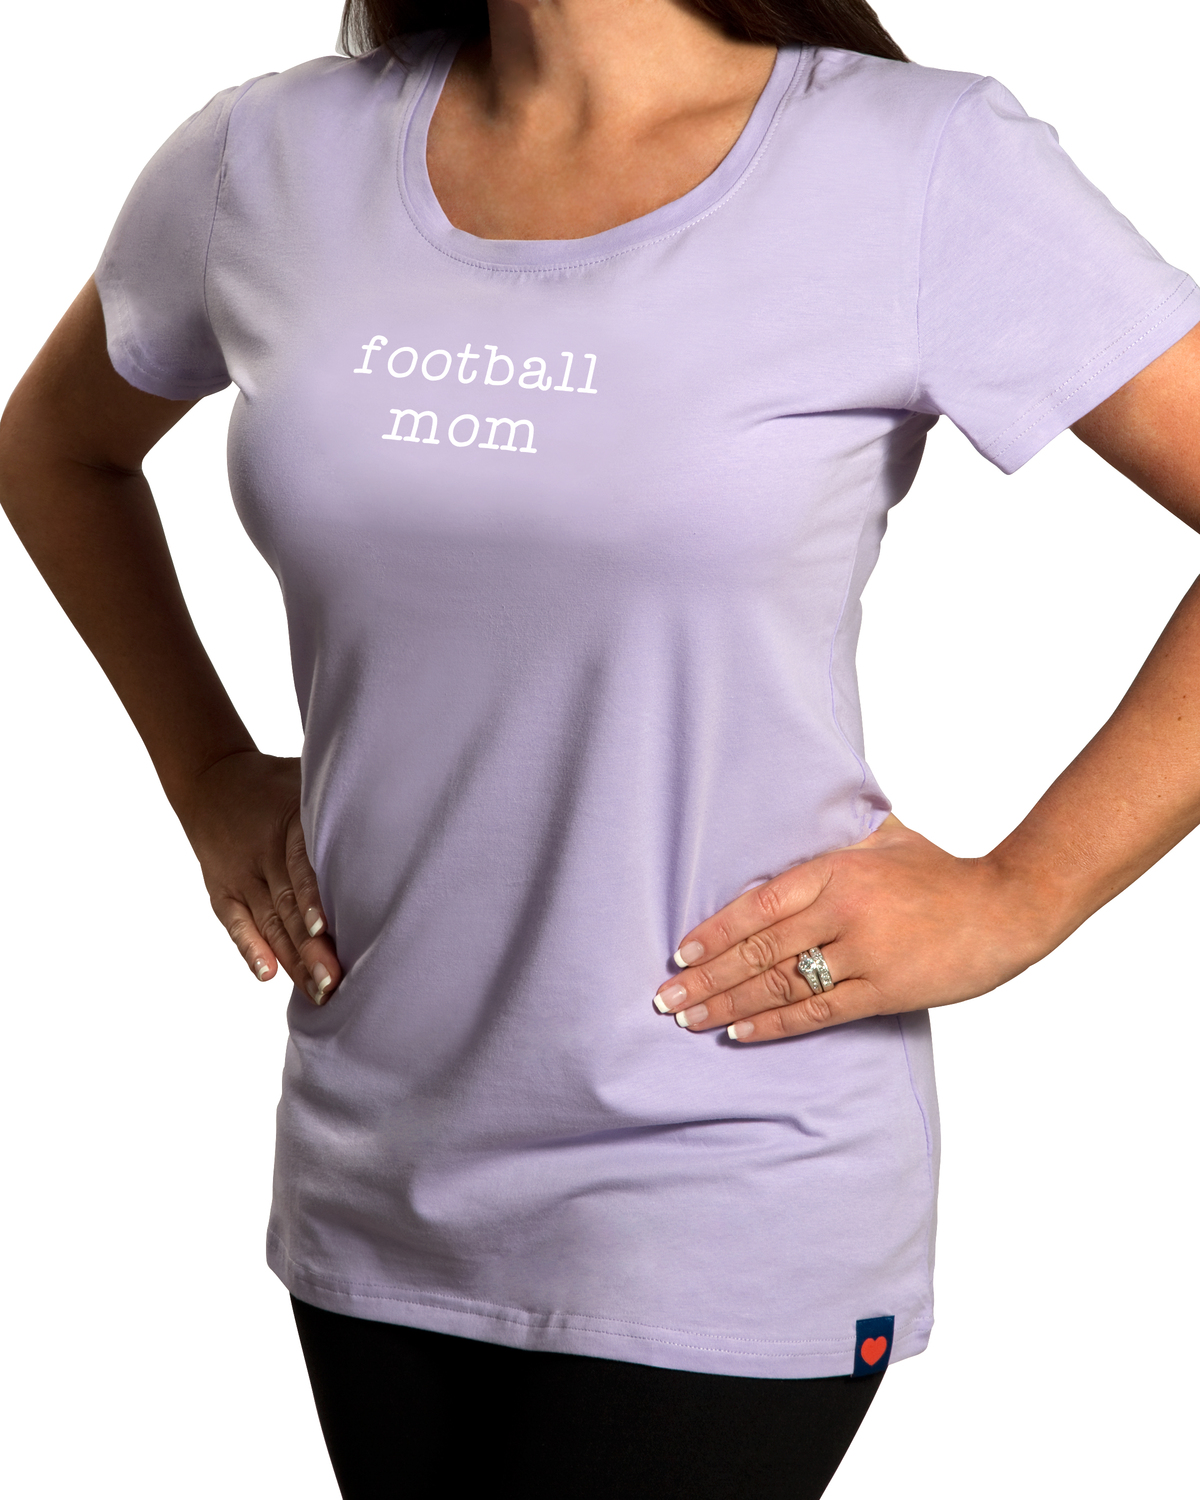 Football Mom by Mom Love - Football Mom - Small Purple T-Shirt